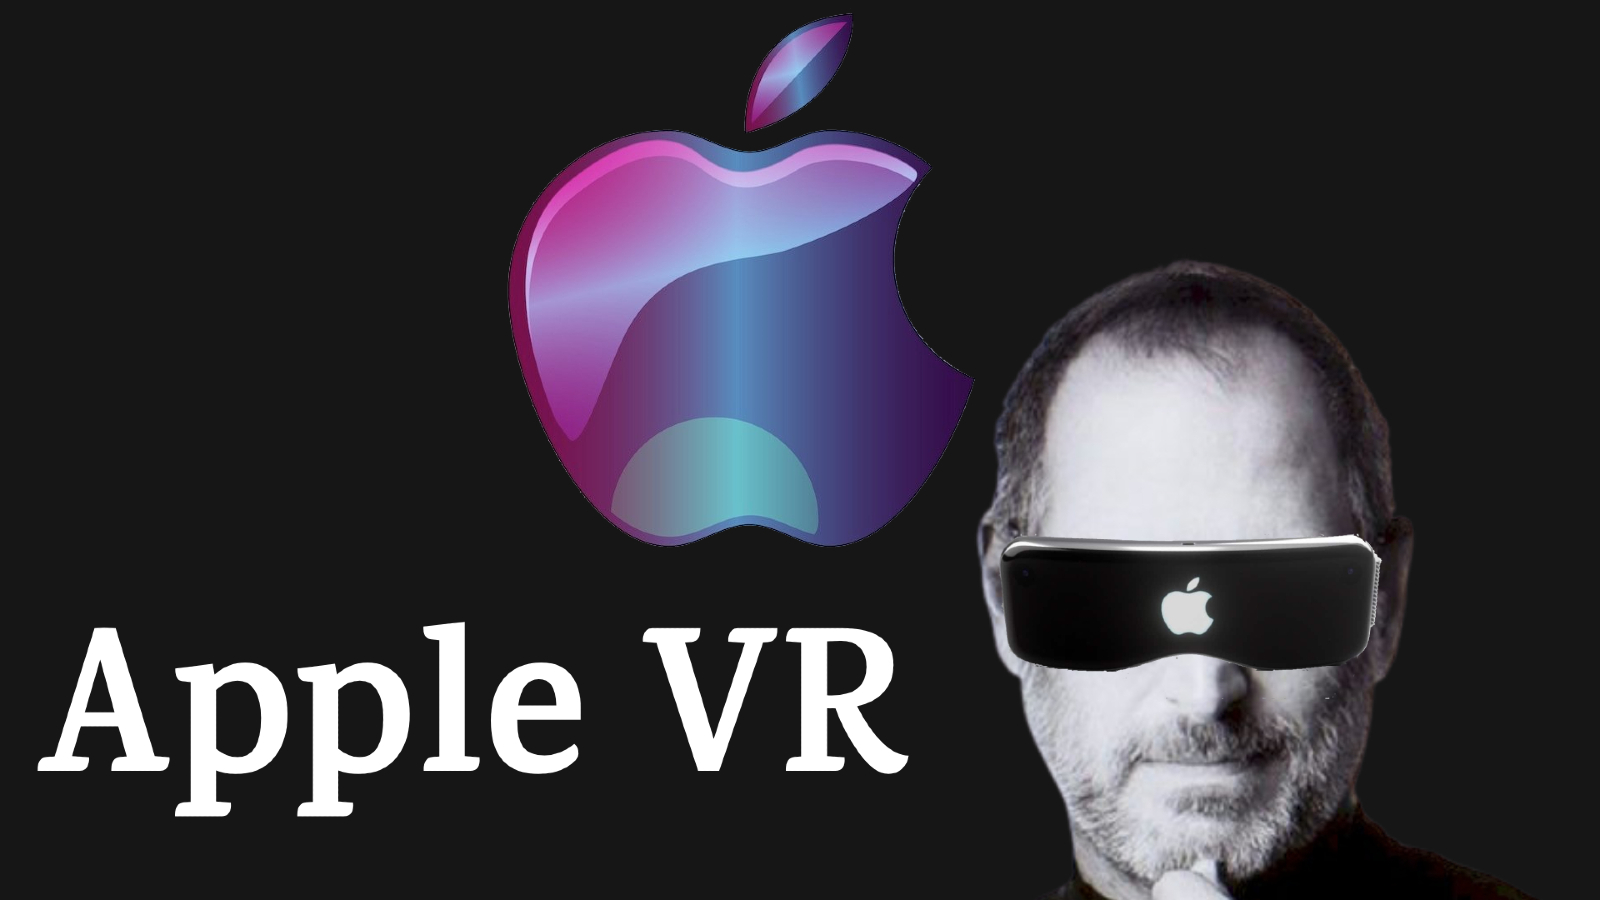 Apple VR Rumors